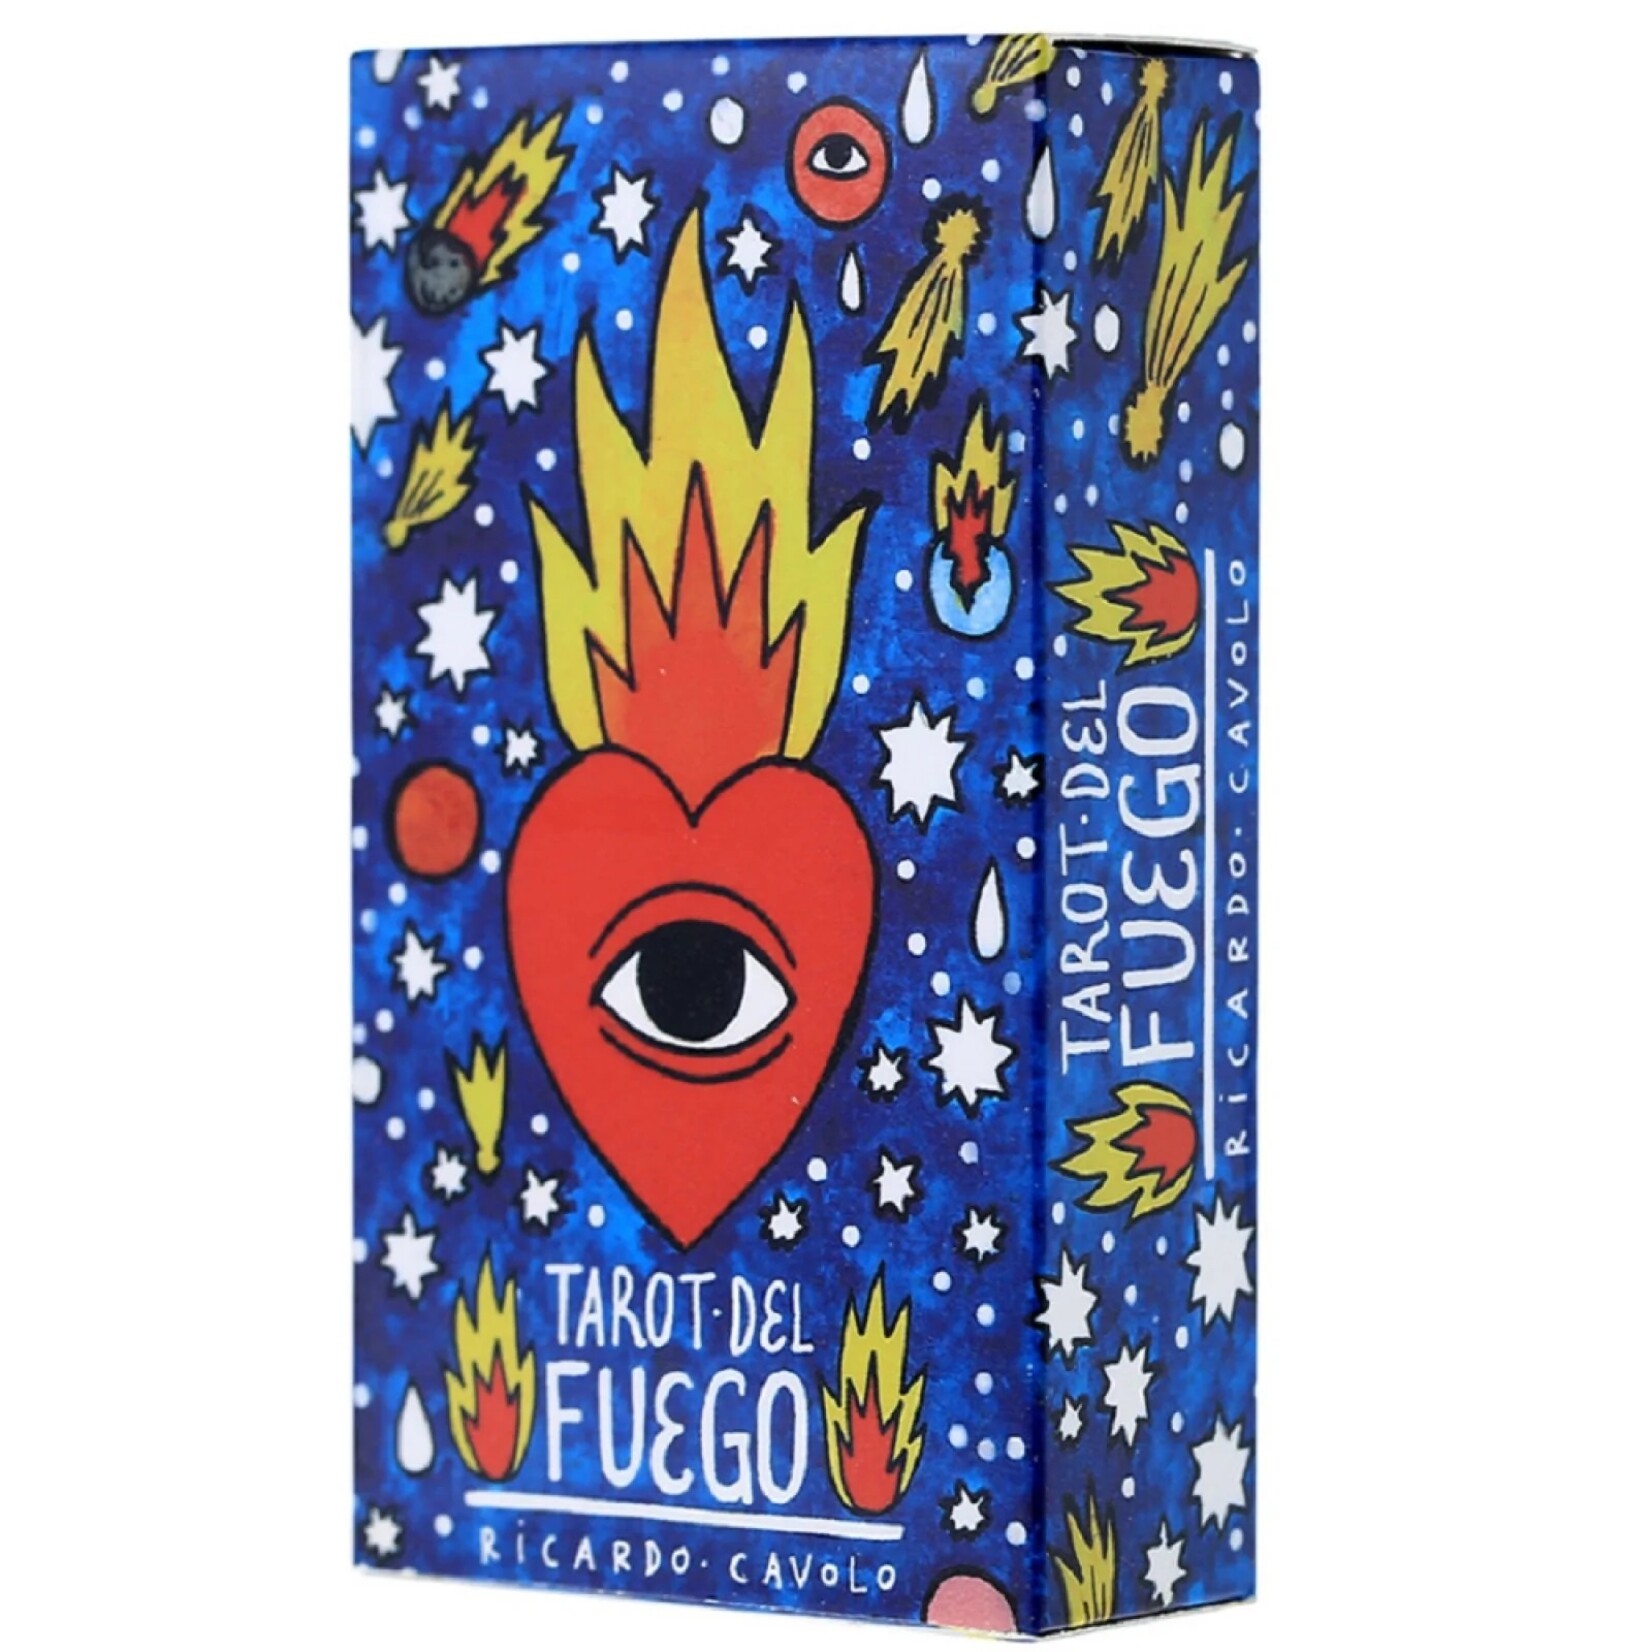 USAOpoly Tarot Cards: Del Fuego by Ricardo Cavolo